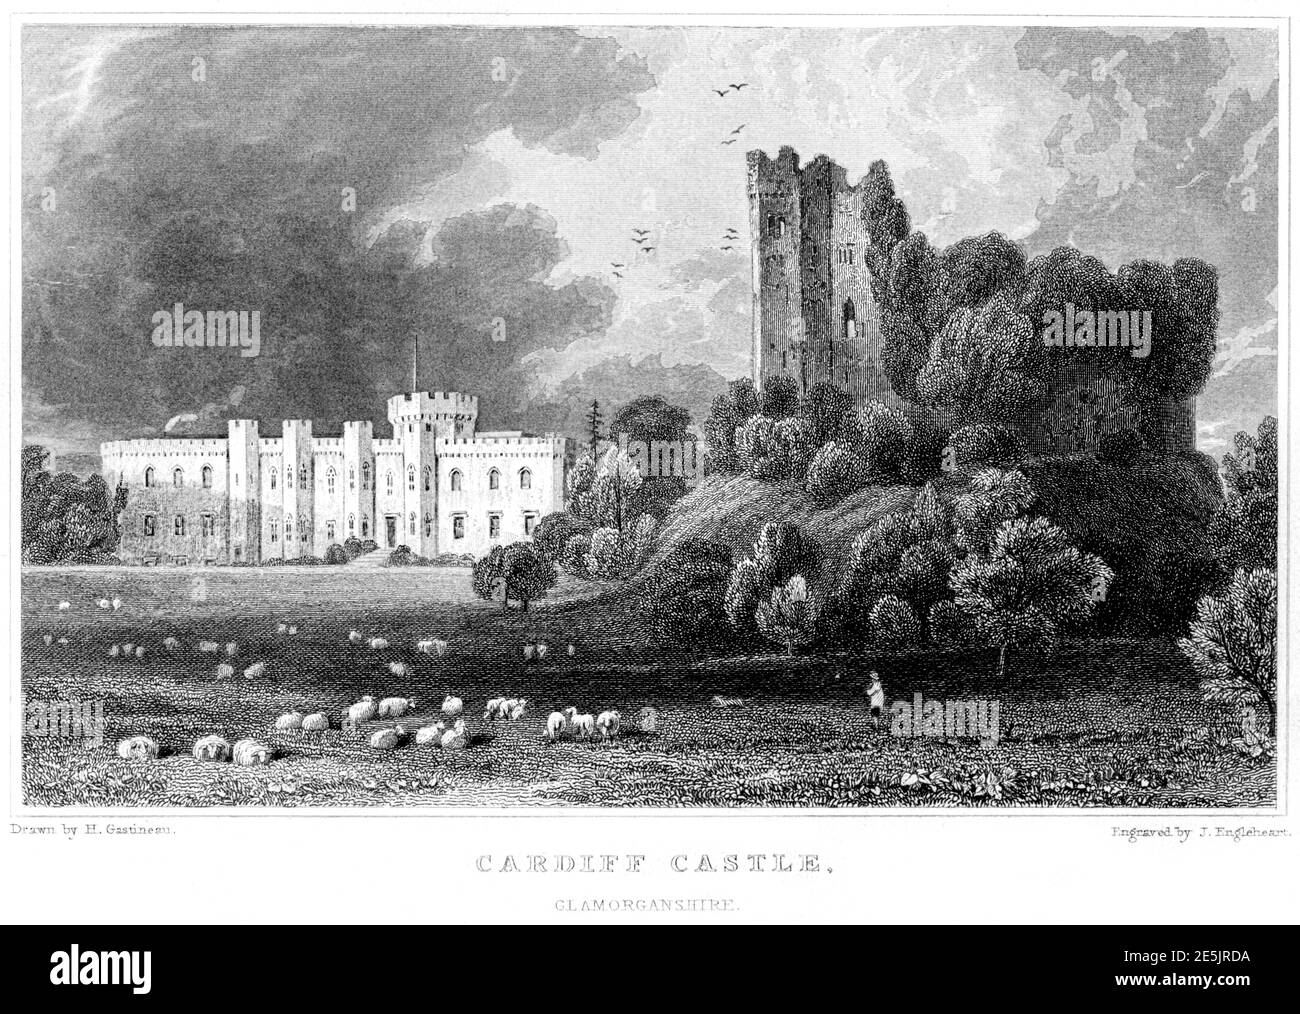 Ein Stich von Cardiff Castle, Glamorganshire, gescannt mit hoher Auflösung von einem Buch im Jahr 1854 veröffentlicht. Für urheberrechtlich frei gehalten. Stockfoto